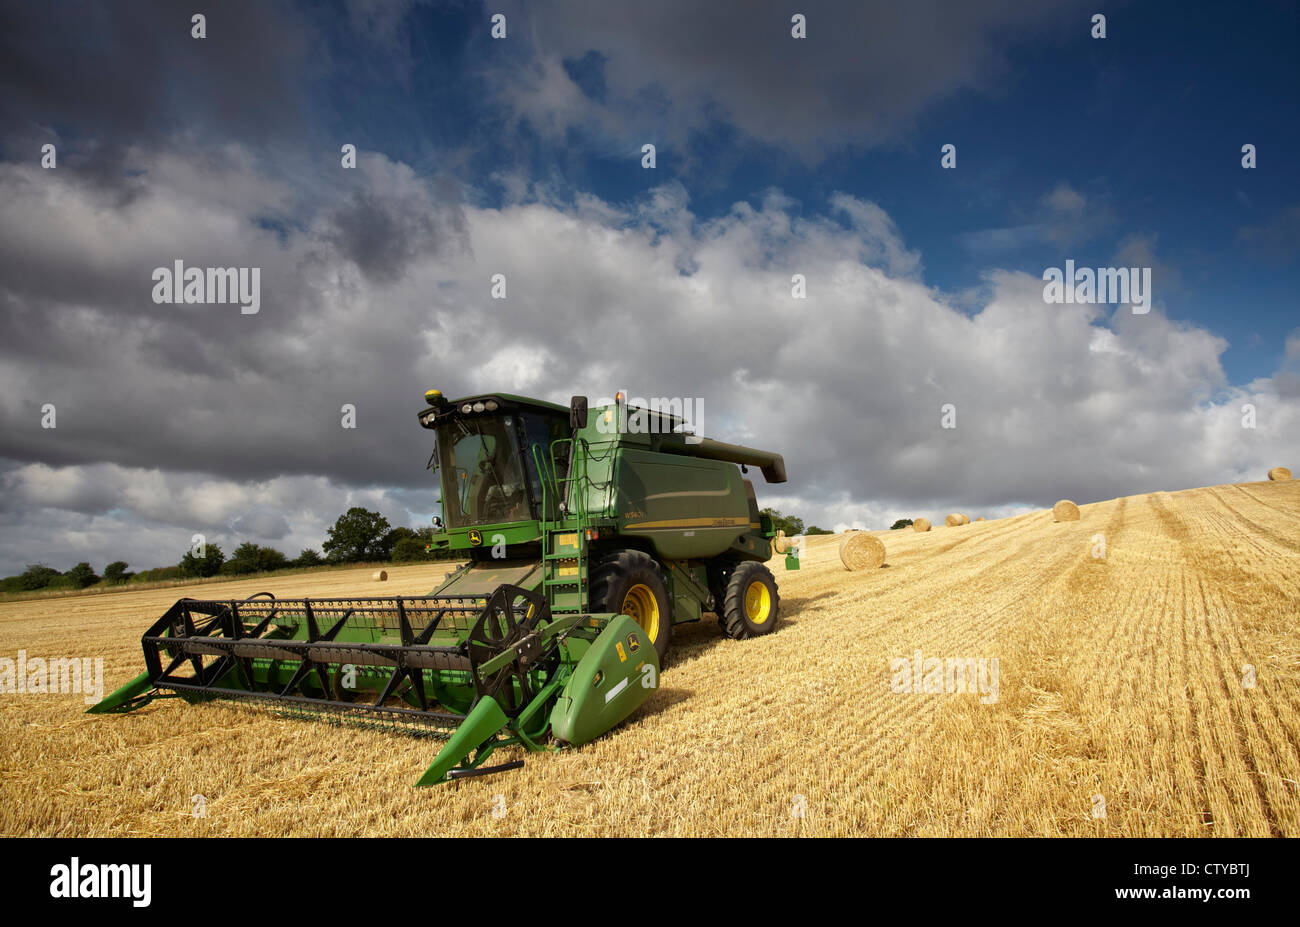 John Deere combine harvester Stock Photo